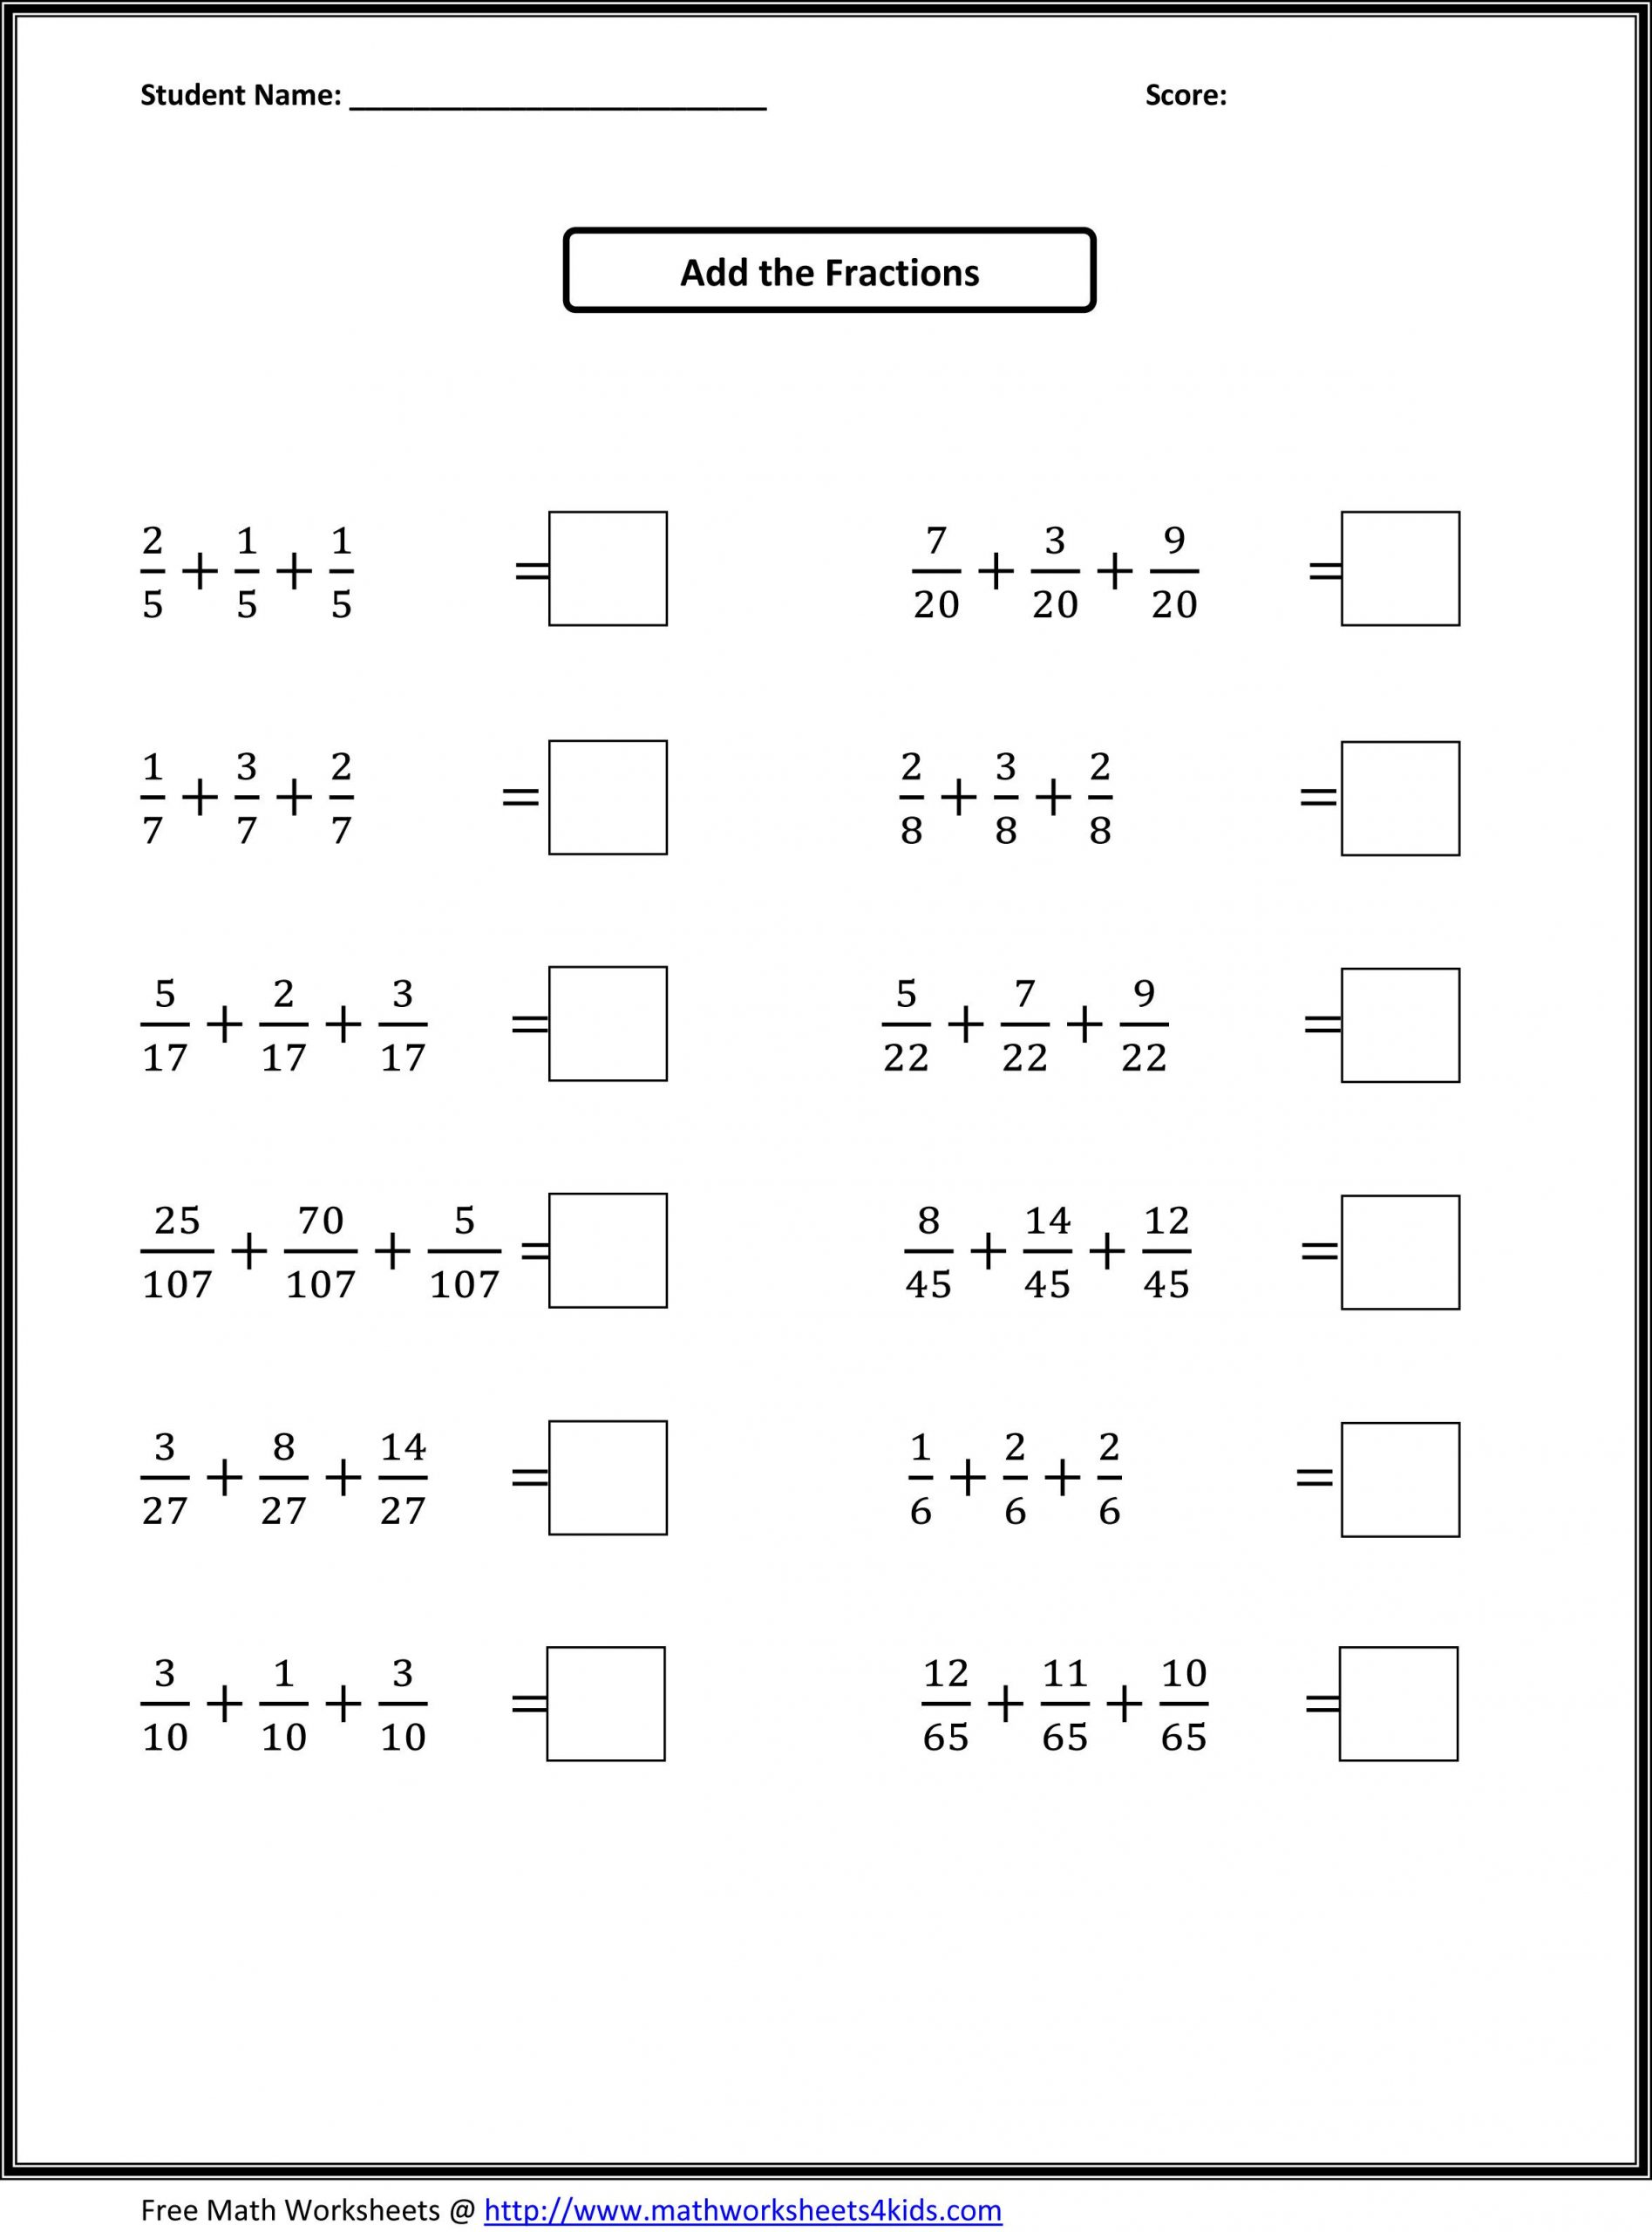 Adding Fractions Worksheet Pdf Fourth Grade Math Worksheets